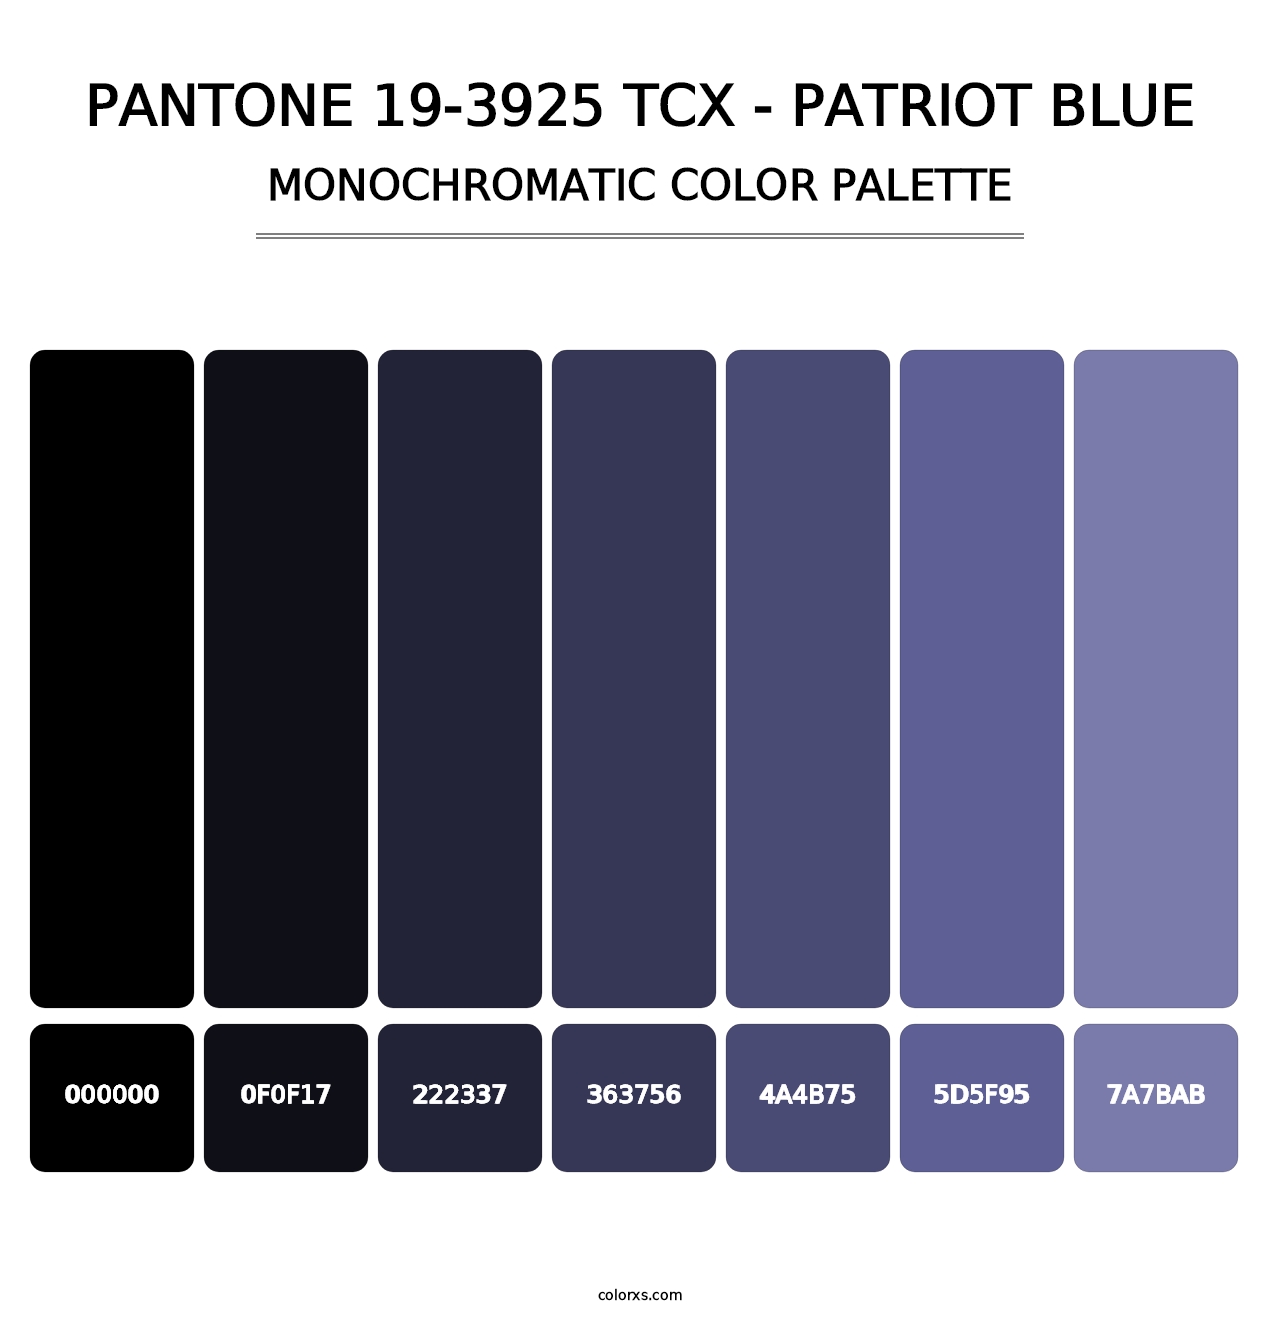 PANTONE 19-3925 TCX - Patriot Blue - Monochromatic Color Palette